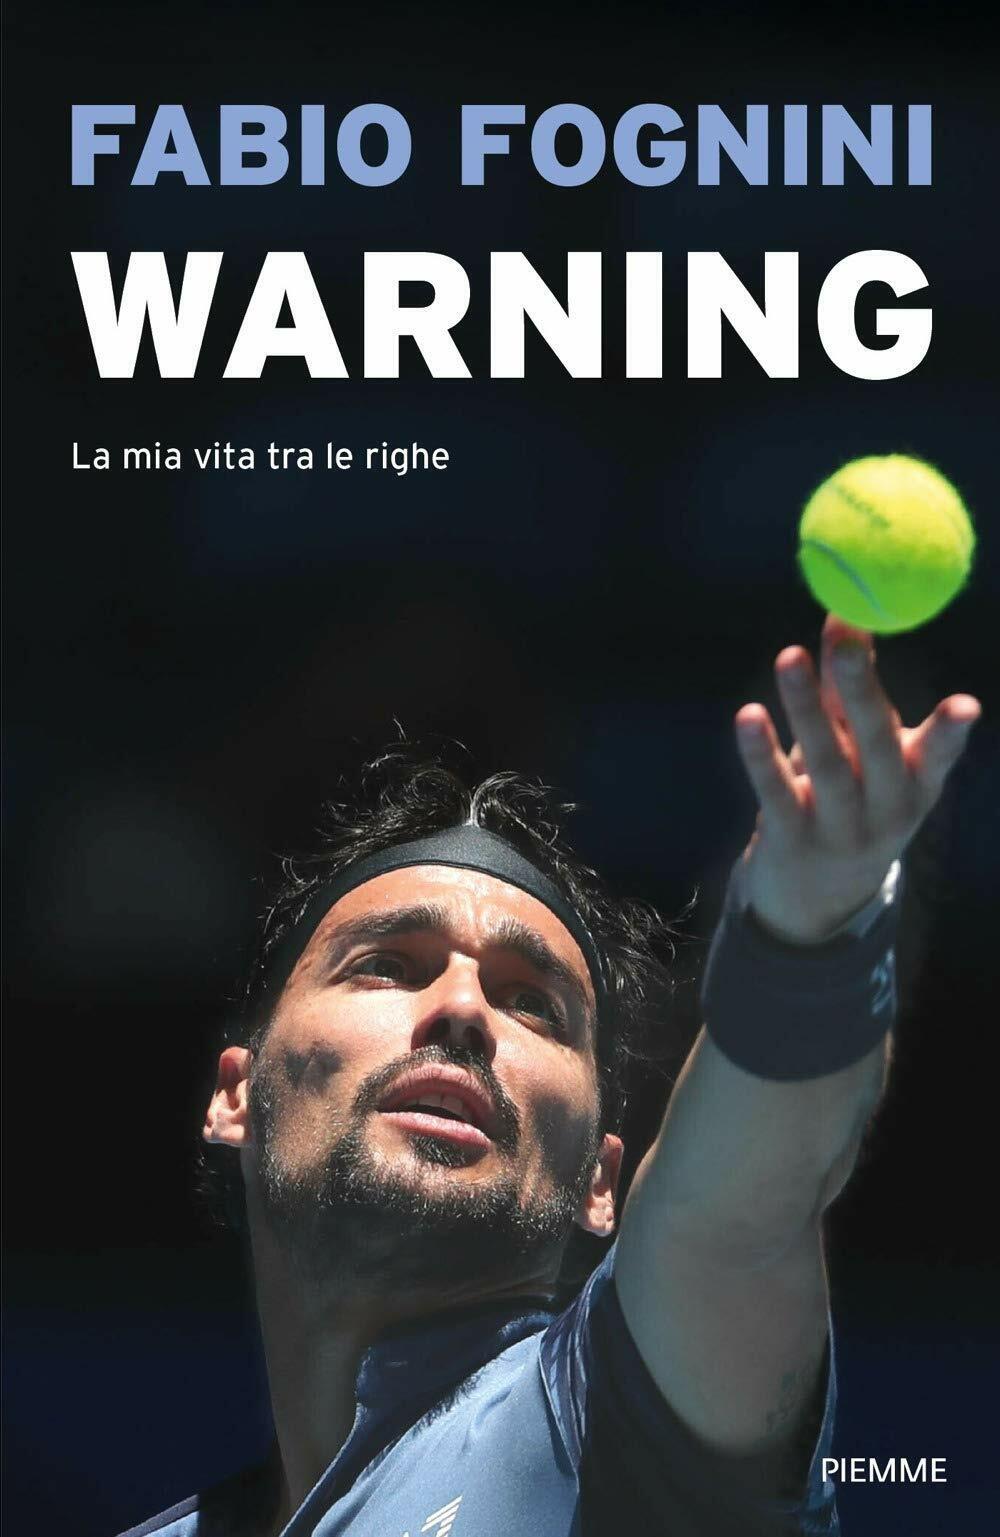 Warning. La mia vita tra le righe - Fabio Fognini - Piemme, 2020